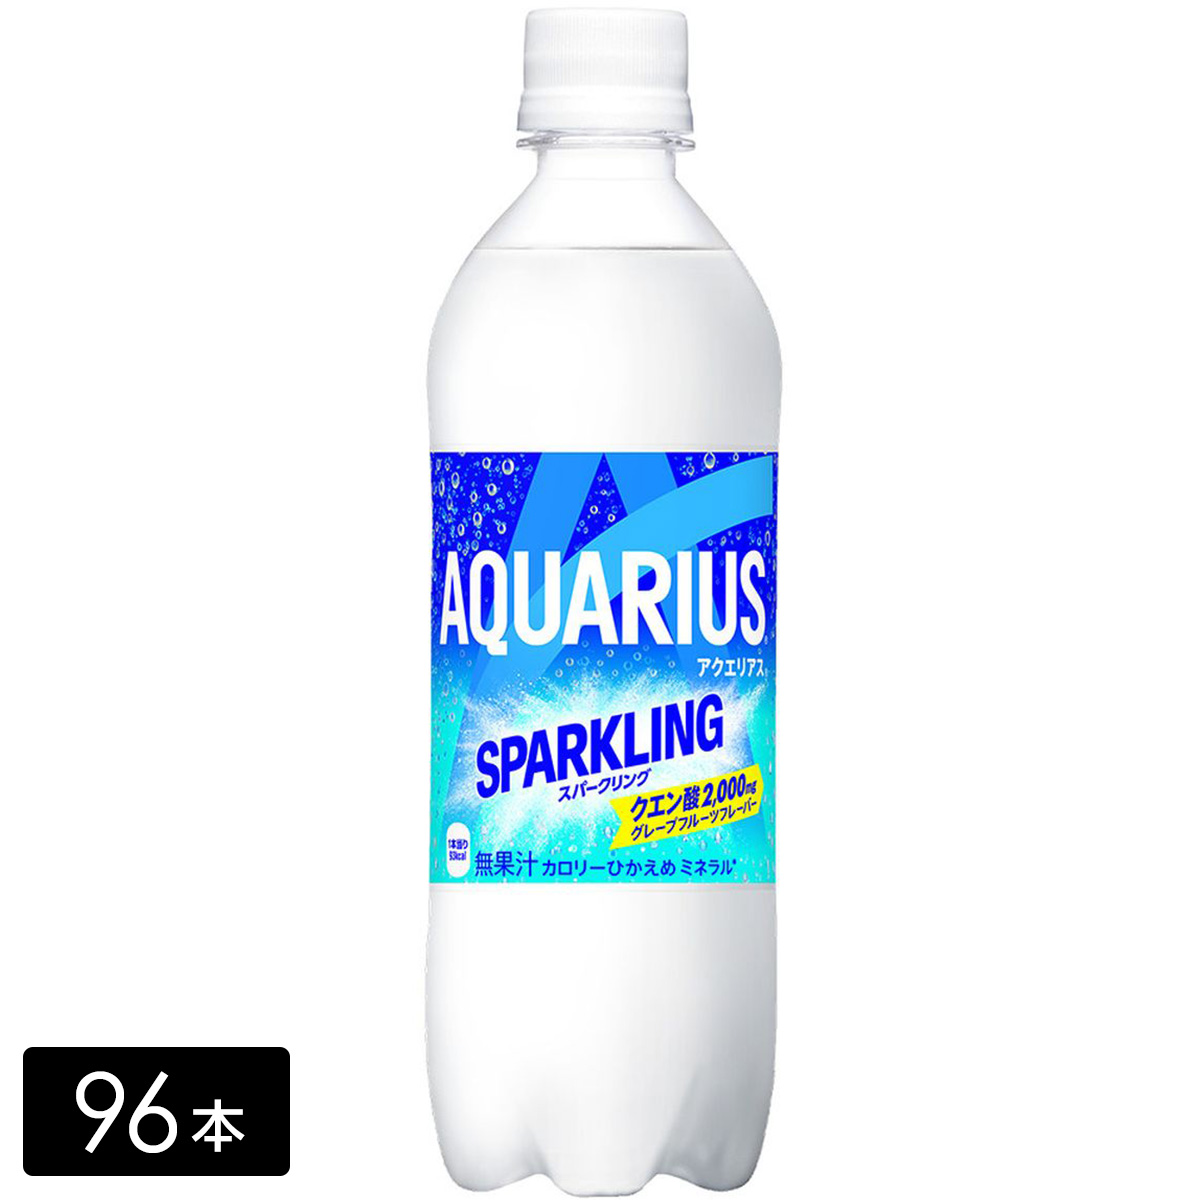 [送料無料]アクエリアス スパークリング 490ml×96本(24本×4箱) 炭酸飲料 熱中症対策 水分補給 AQUARIUS ペットボトル ケース売り まとめ買い